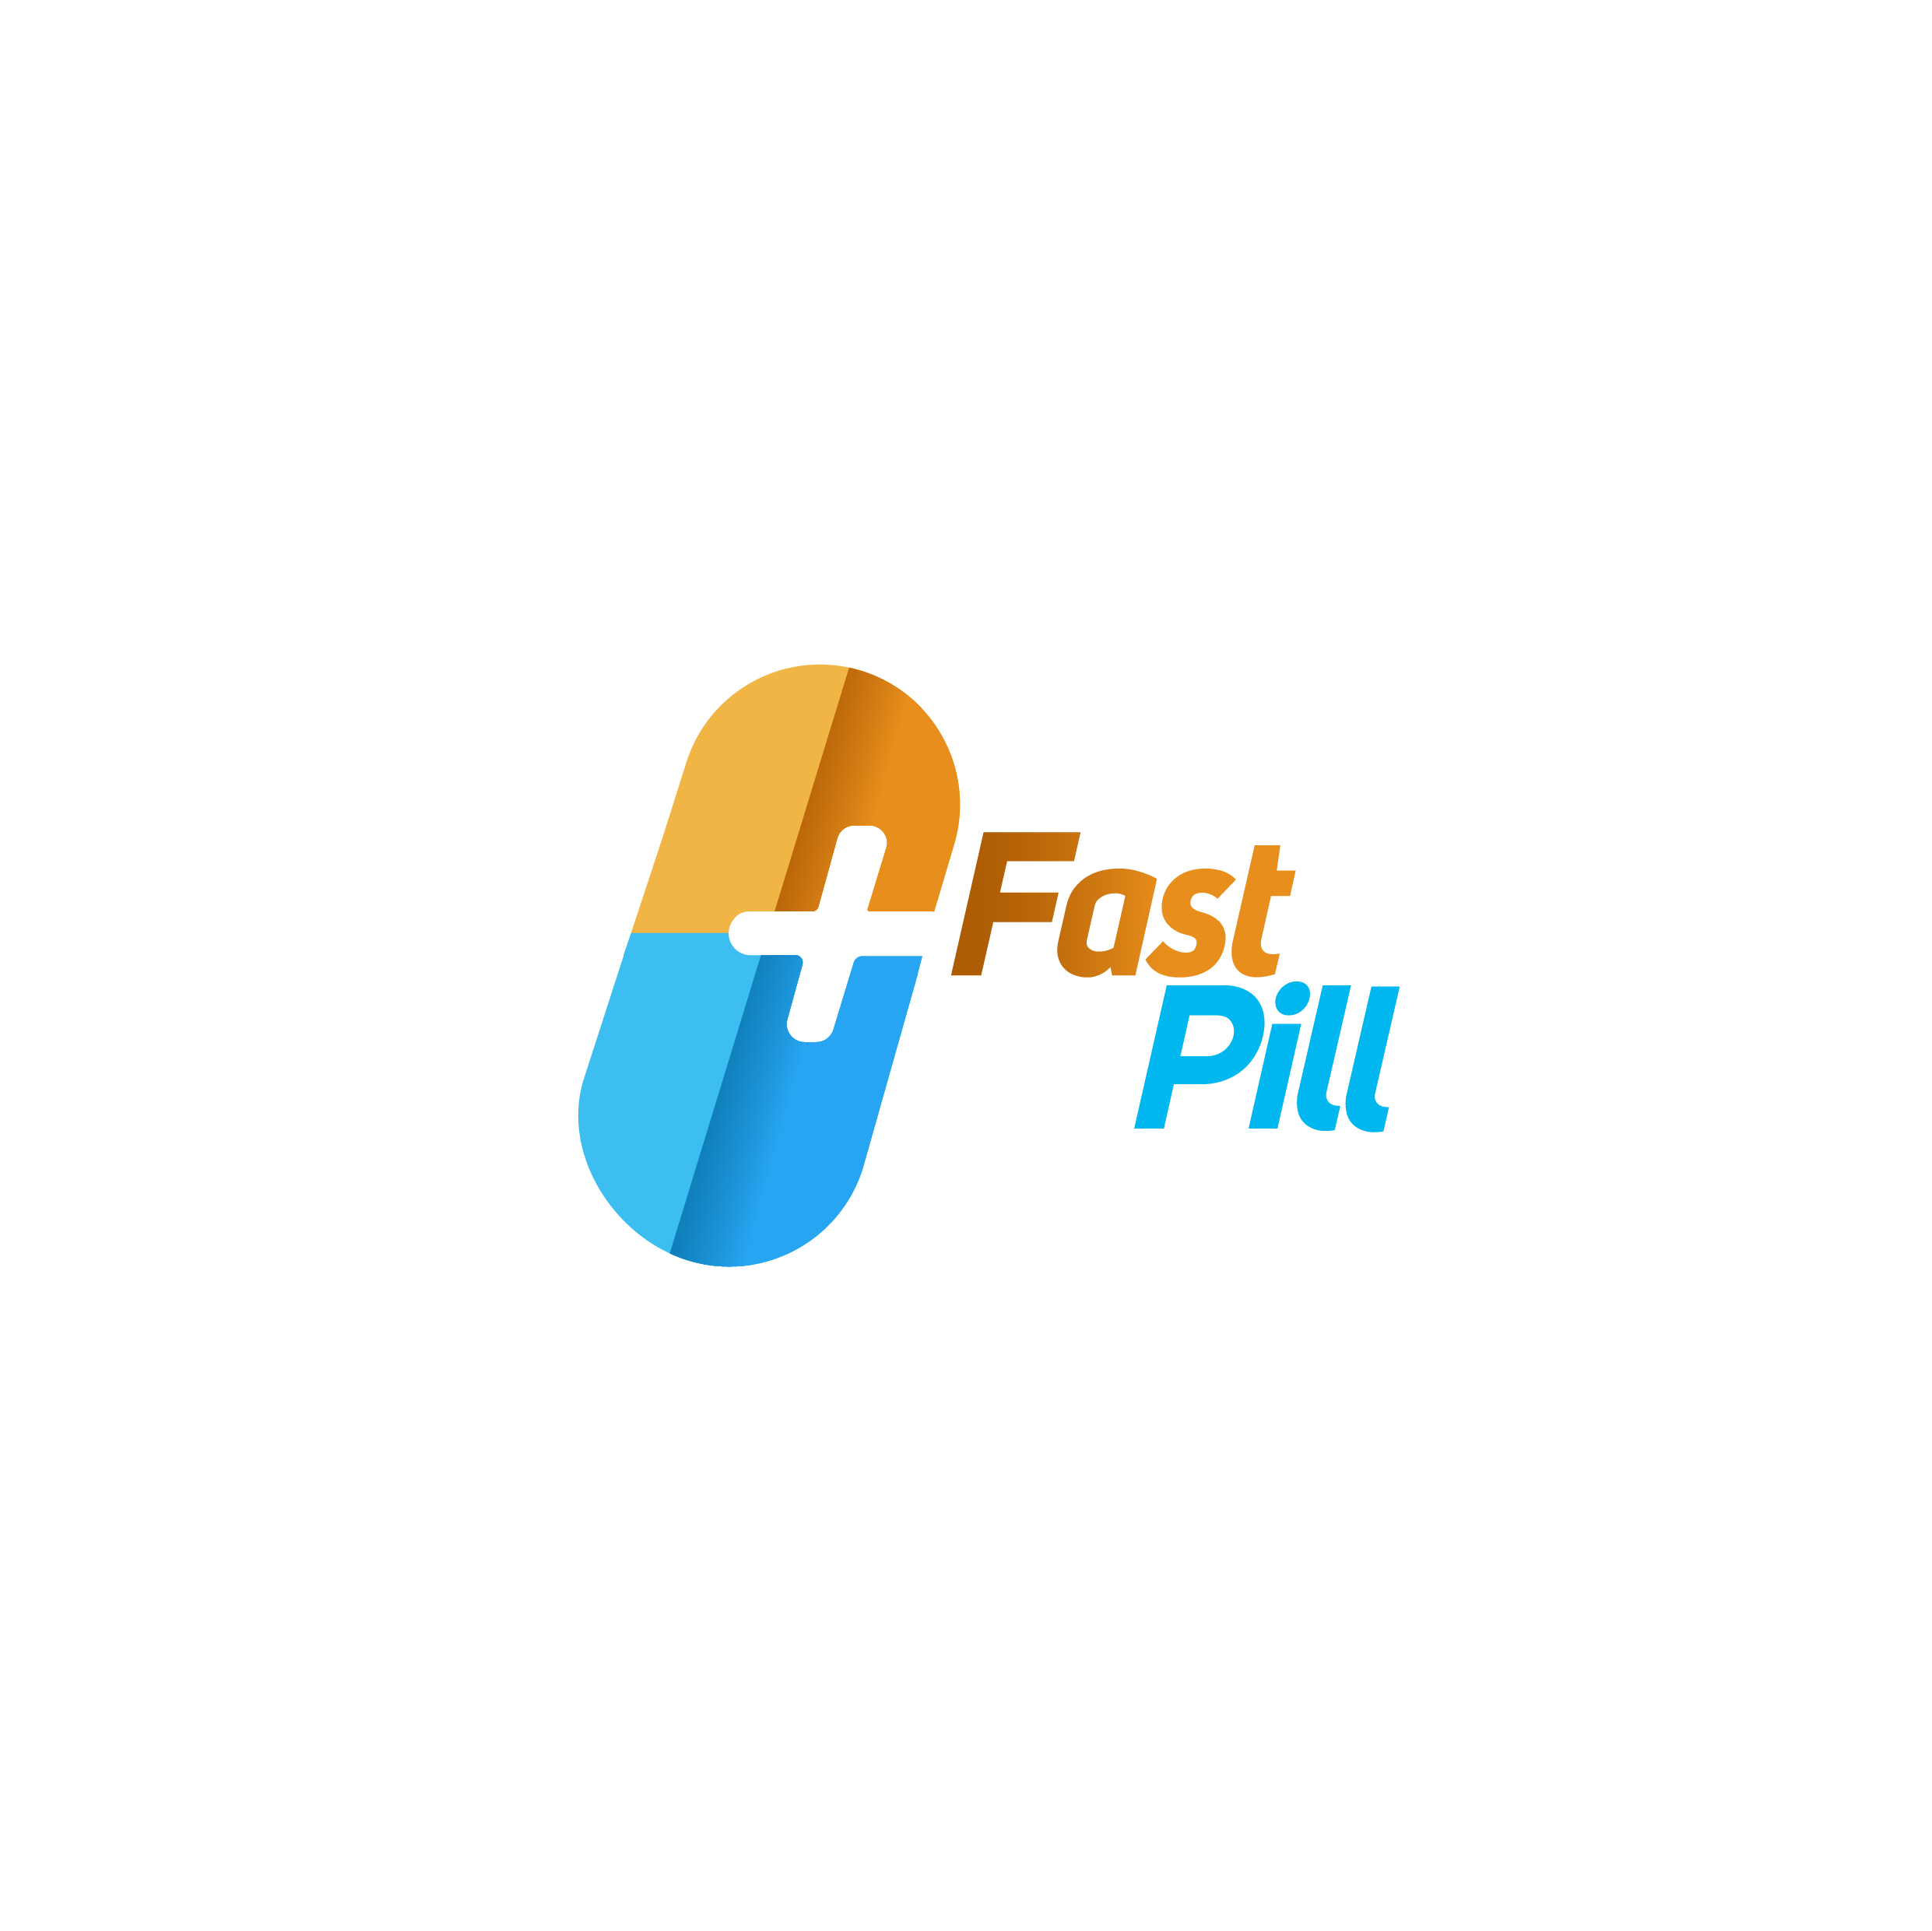 Fastpill Healthcare P Ltd